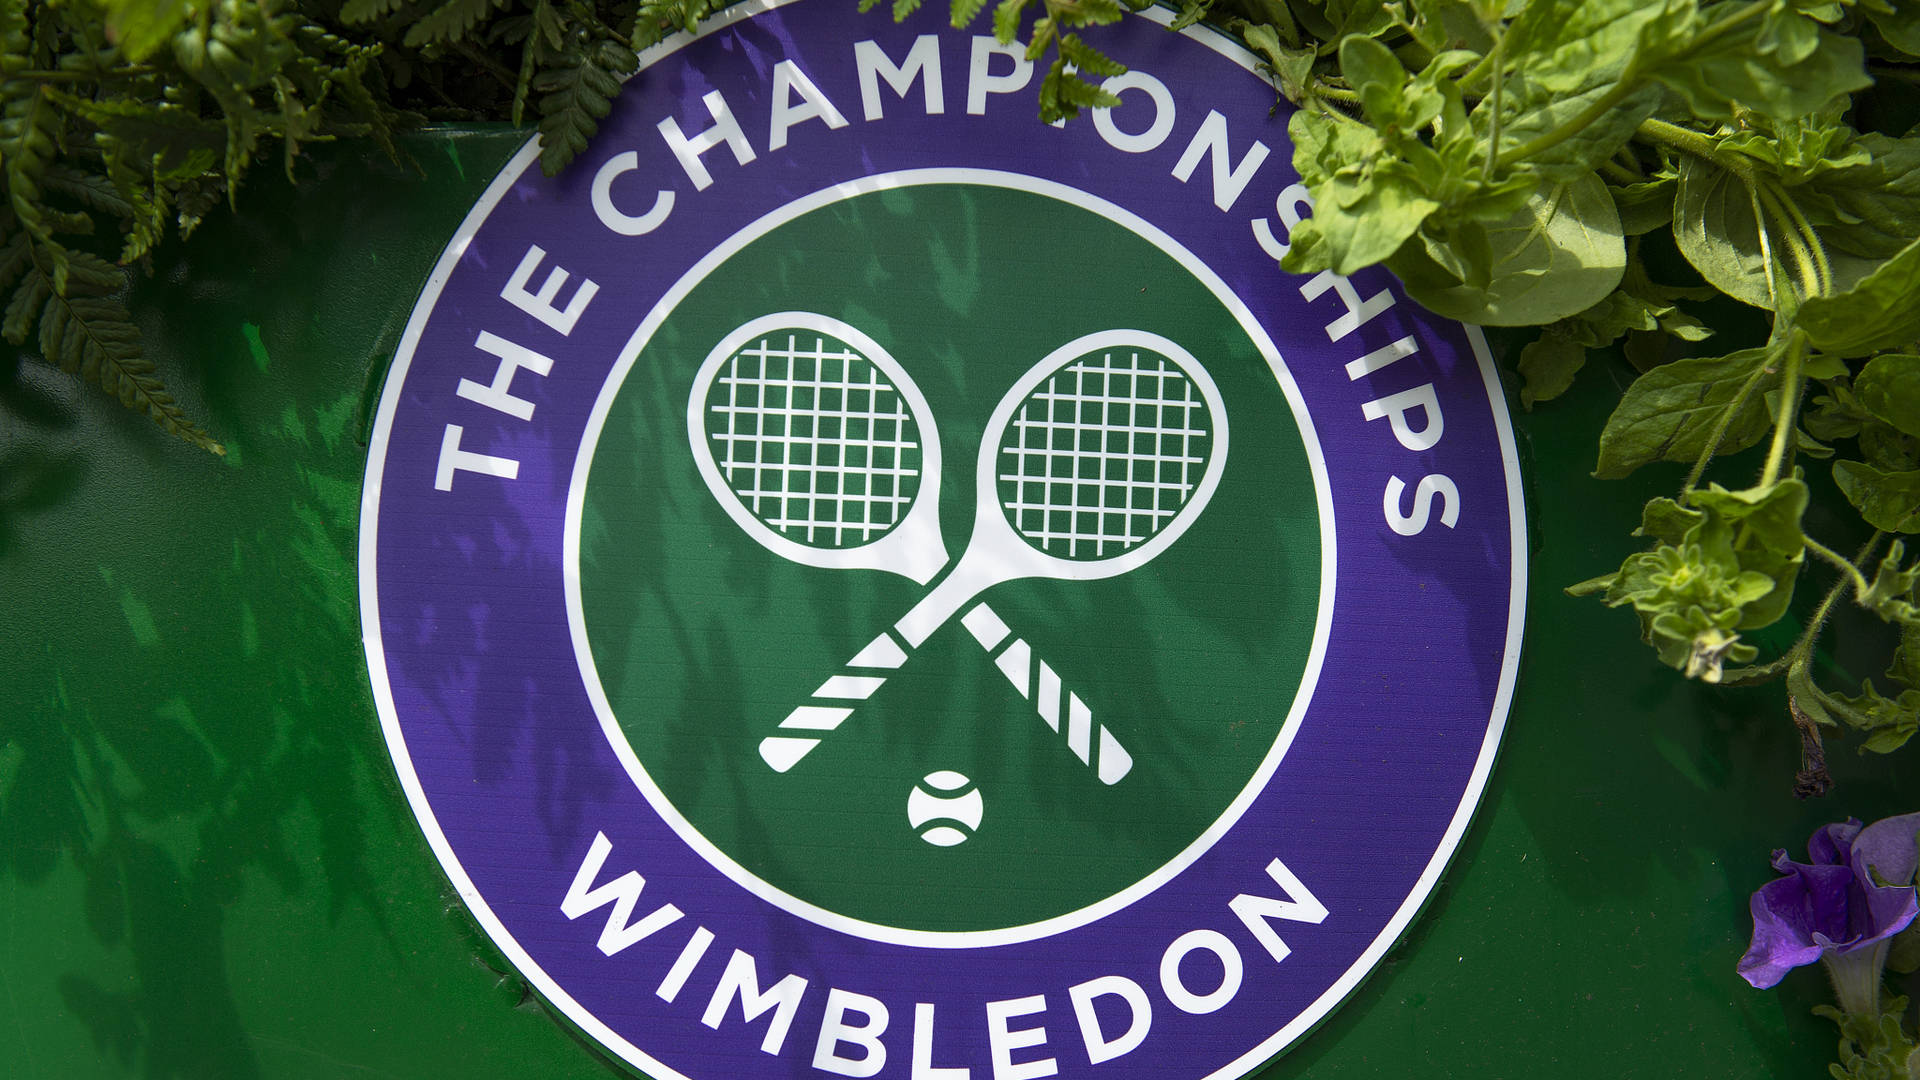 Logotipode Wimbledon Com Raquete De Tênis Branca. Papel de Parede